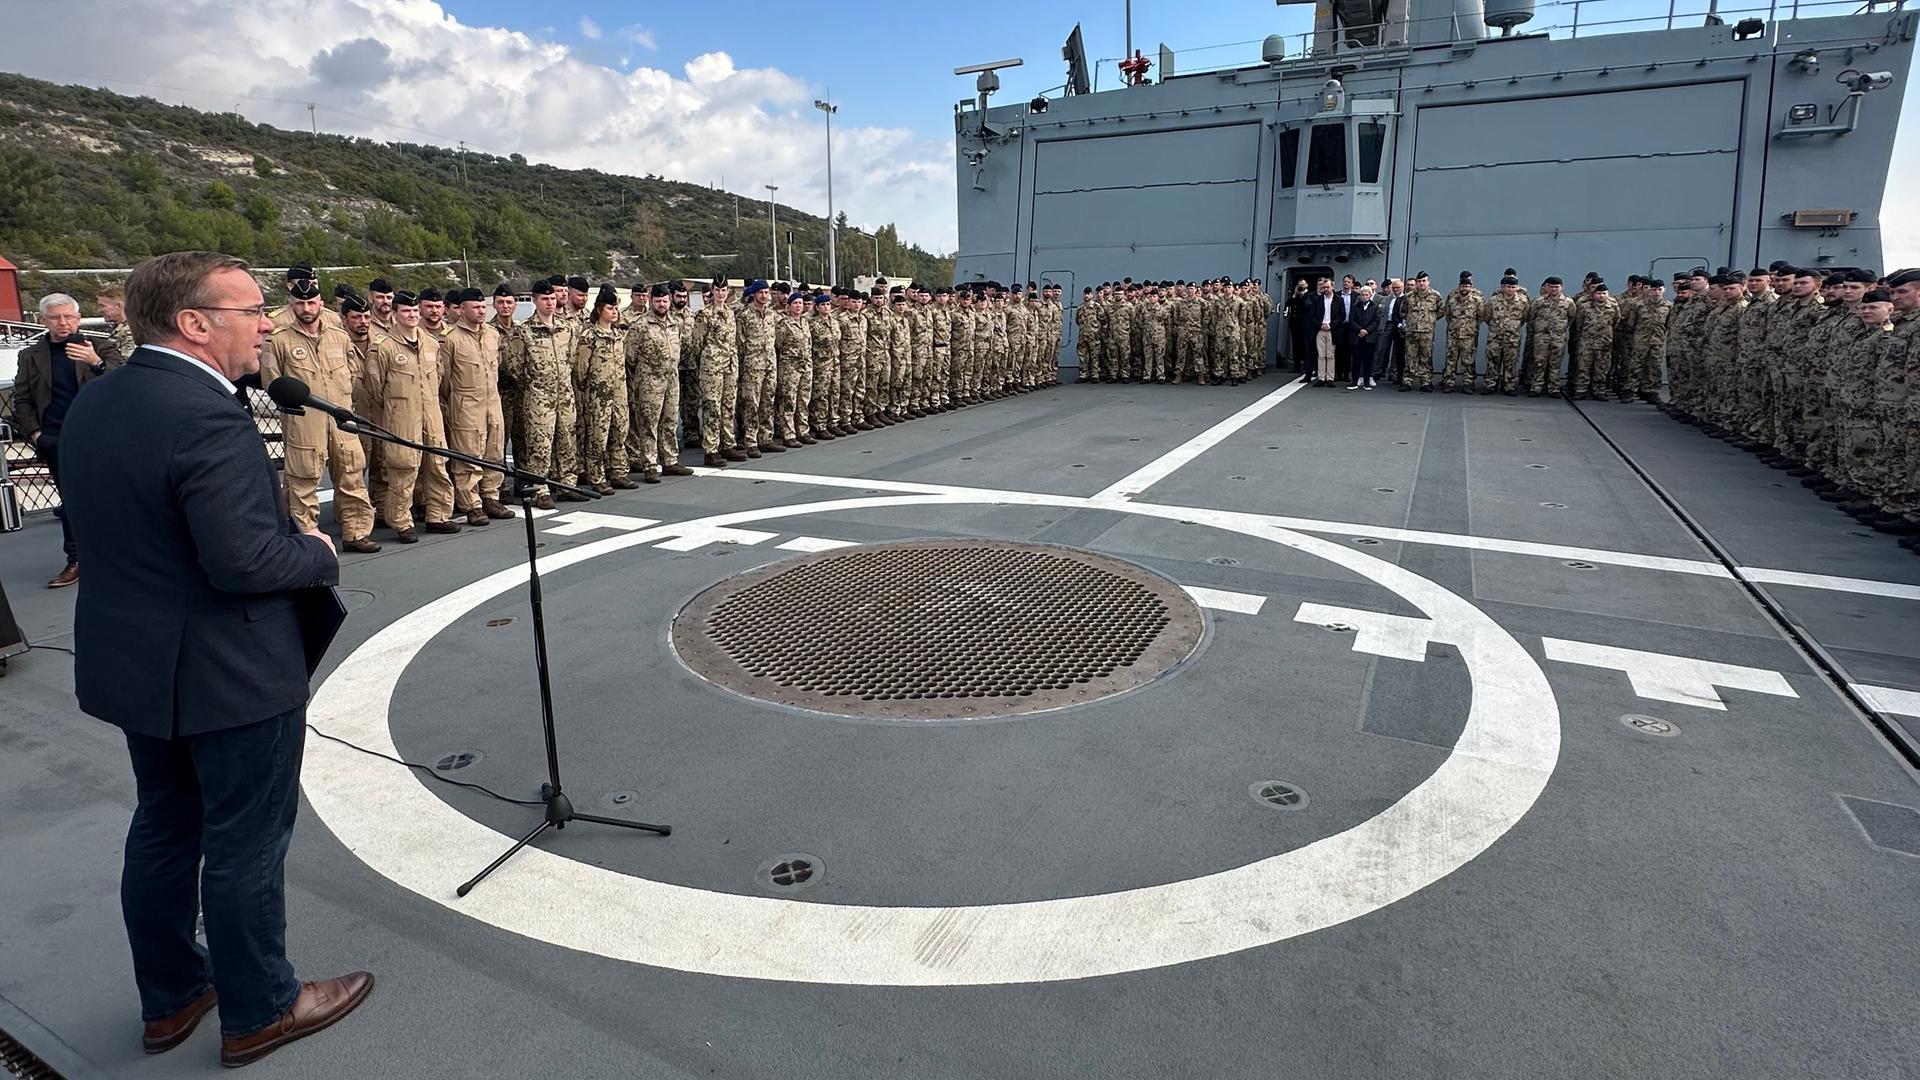 Griechenland, Souda: Soldaten sind beim Besuch von Boris Pistorius (SPD, v), Bundesminister der Verteidigung, an Bord der Fregatte "Hessen" im Souda Bay, Kreta angetreten.